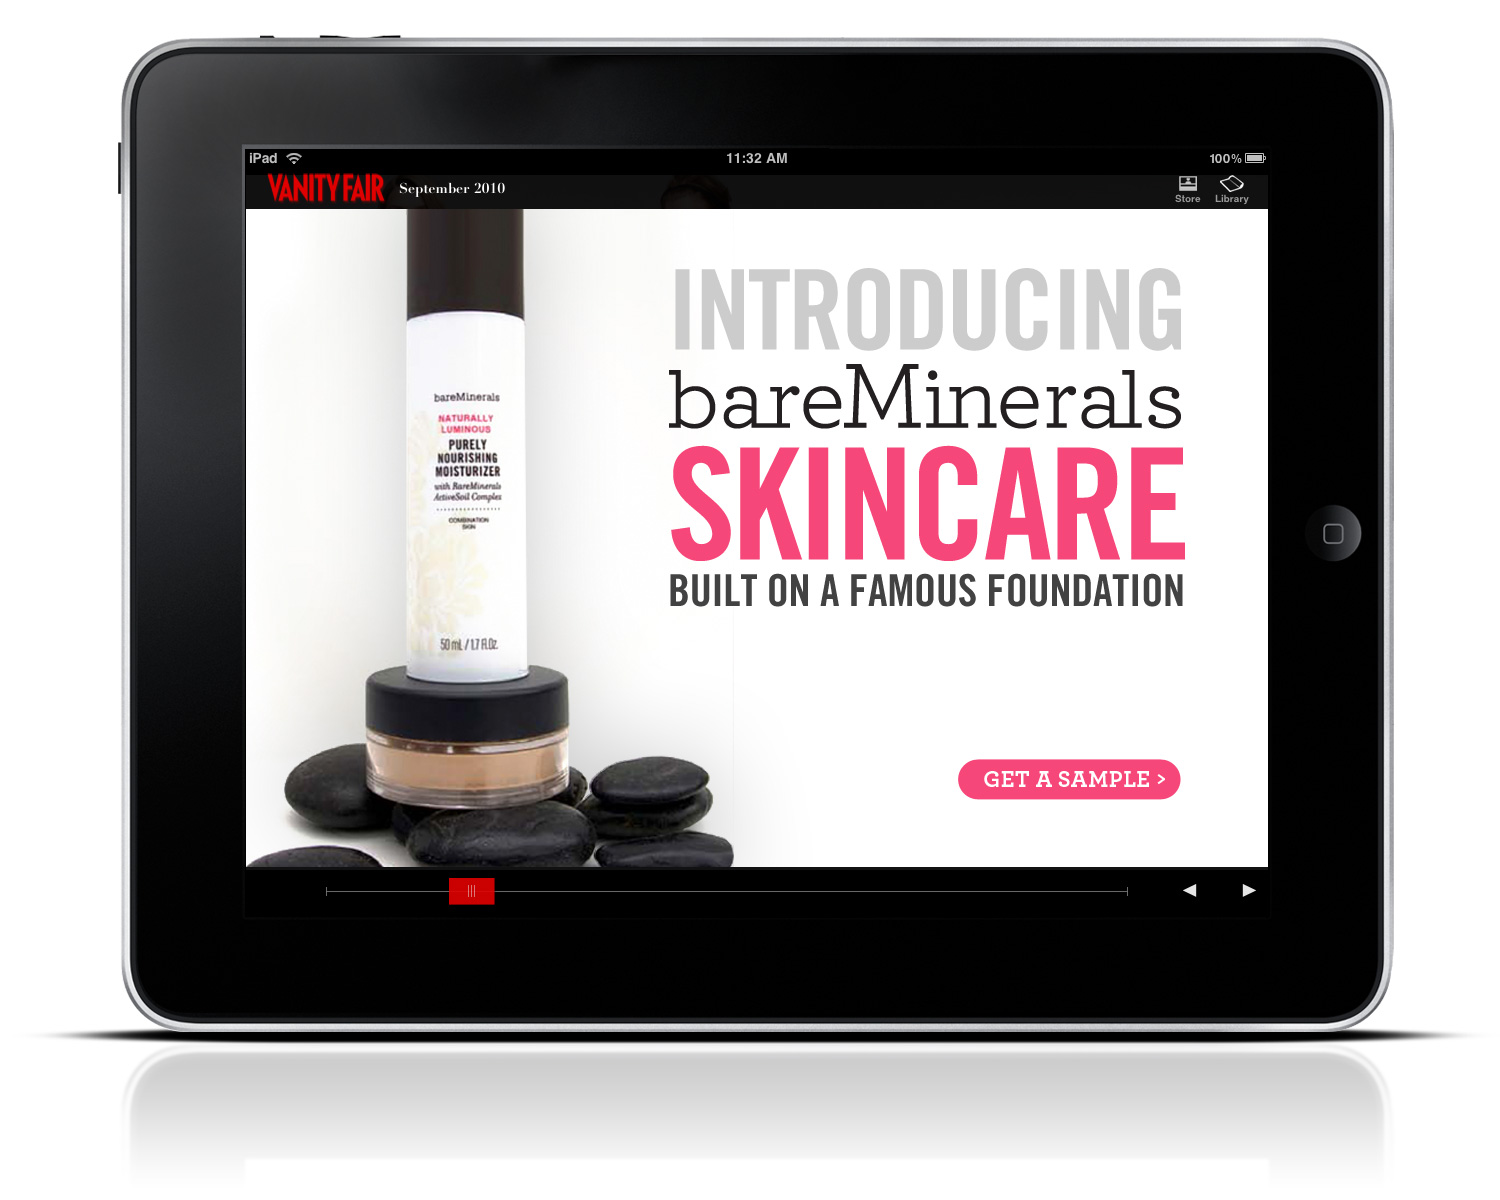 Ad campaign: Bare Minerals Skincare